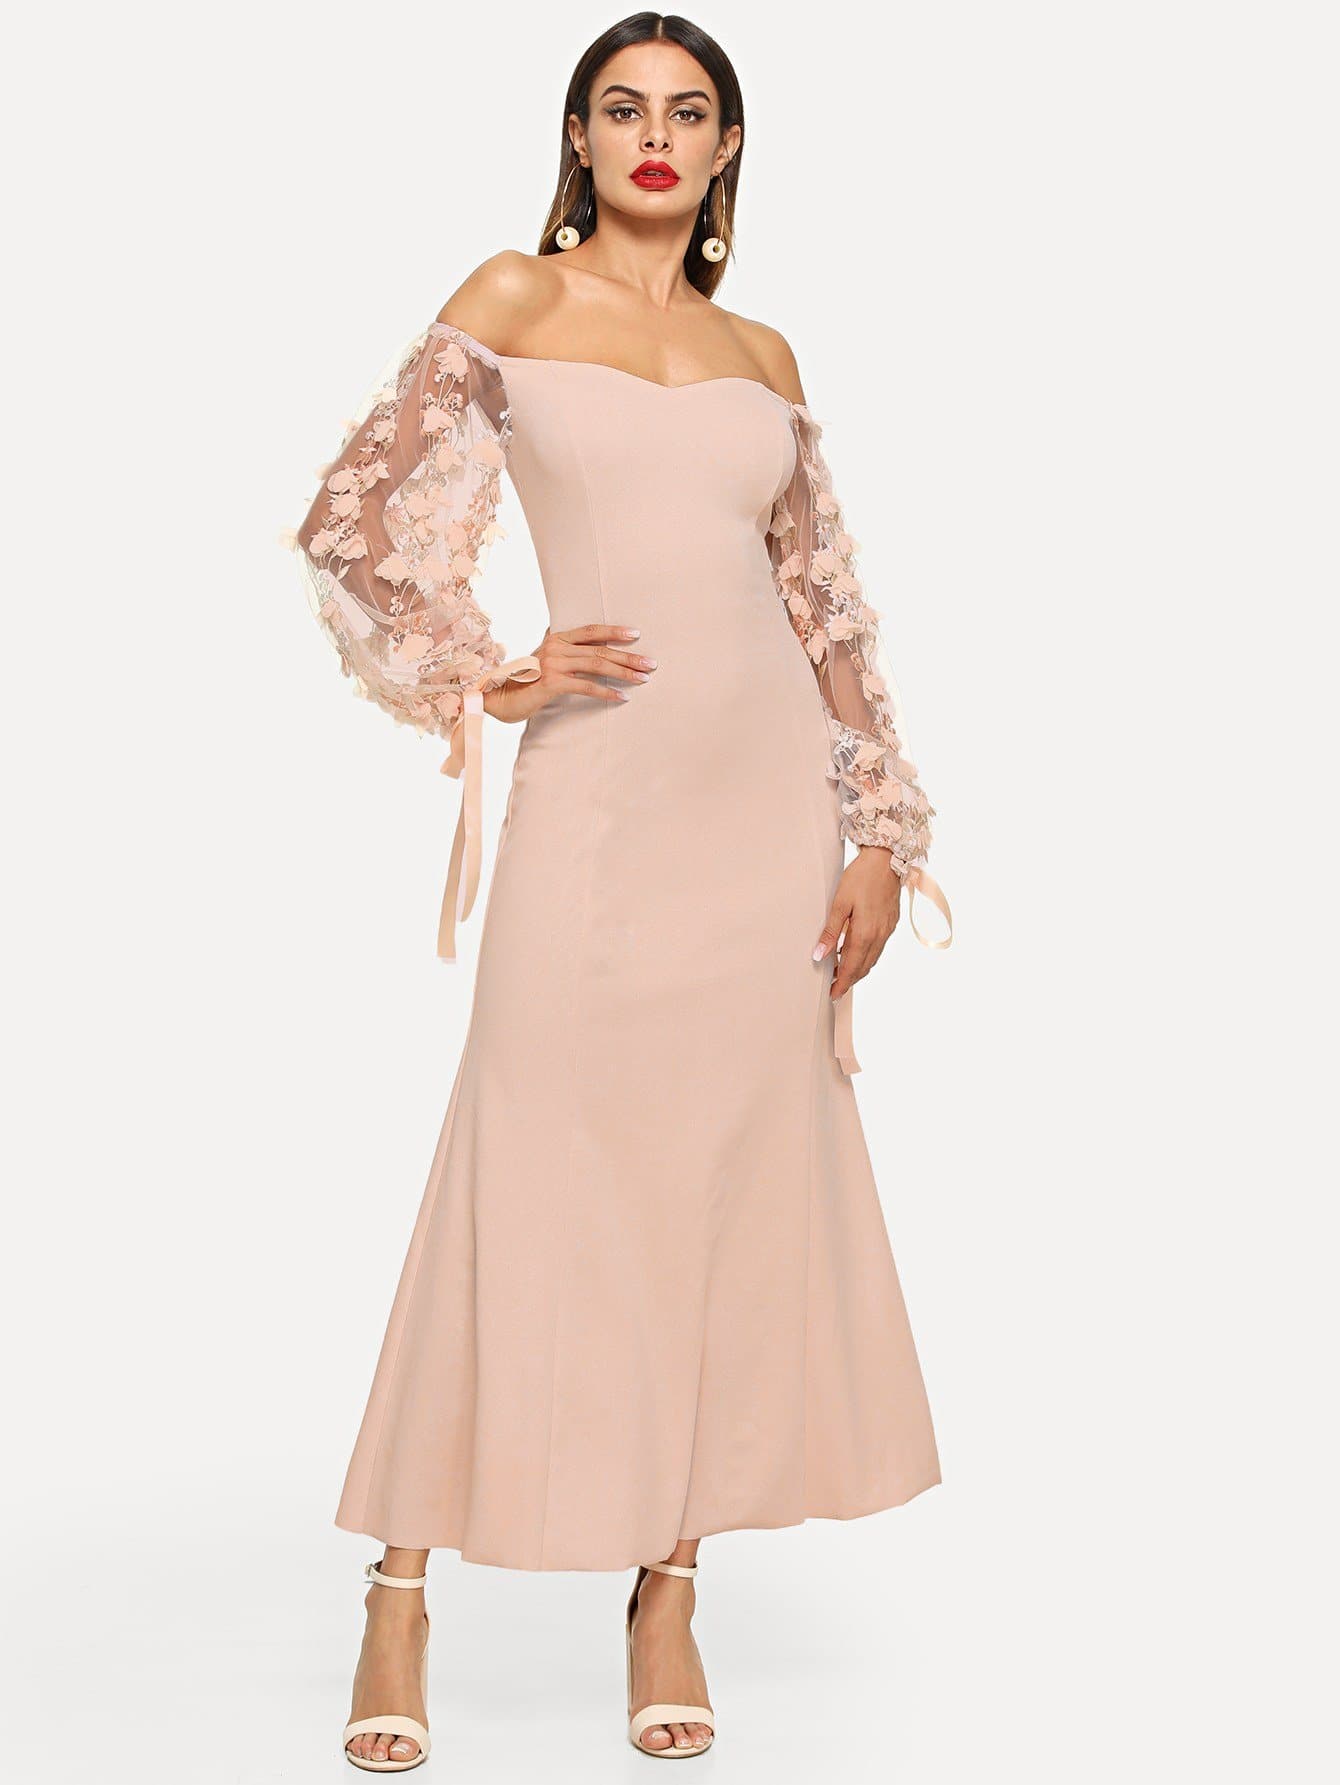 Apricot 3D Applique Sheer Sleeve Off Shoulder Dress